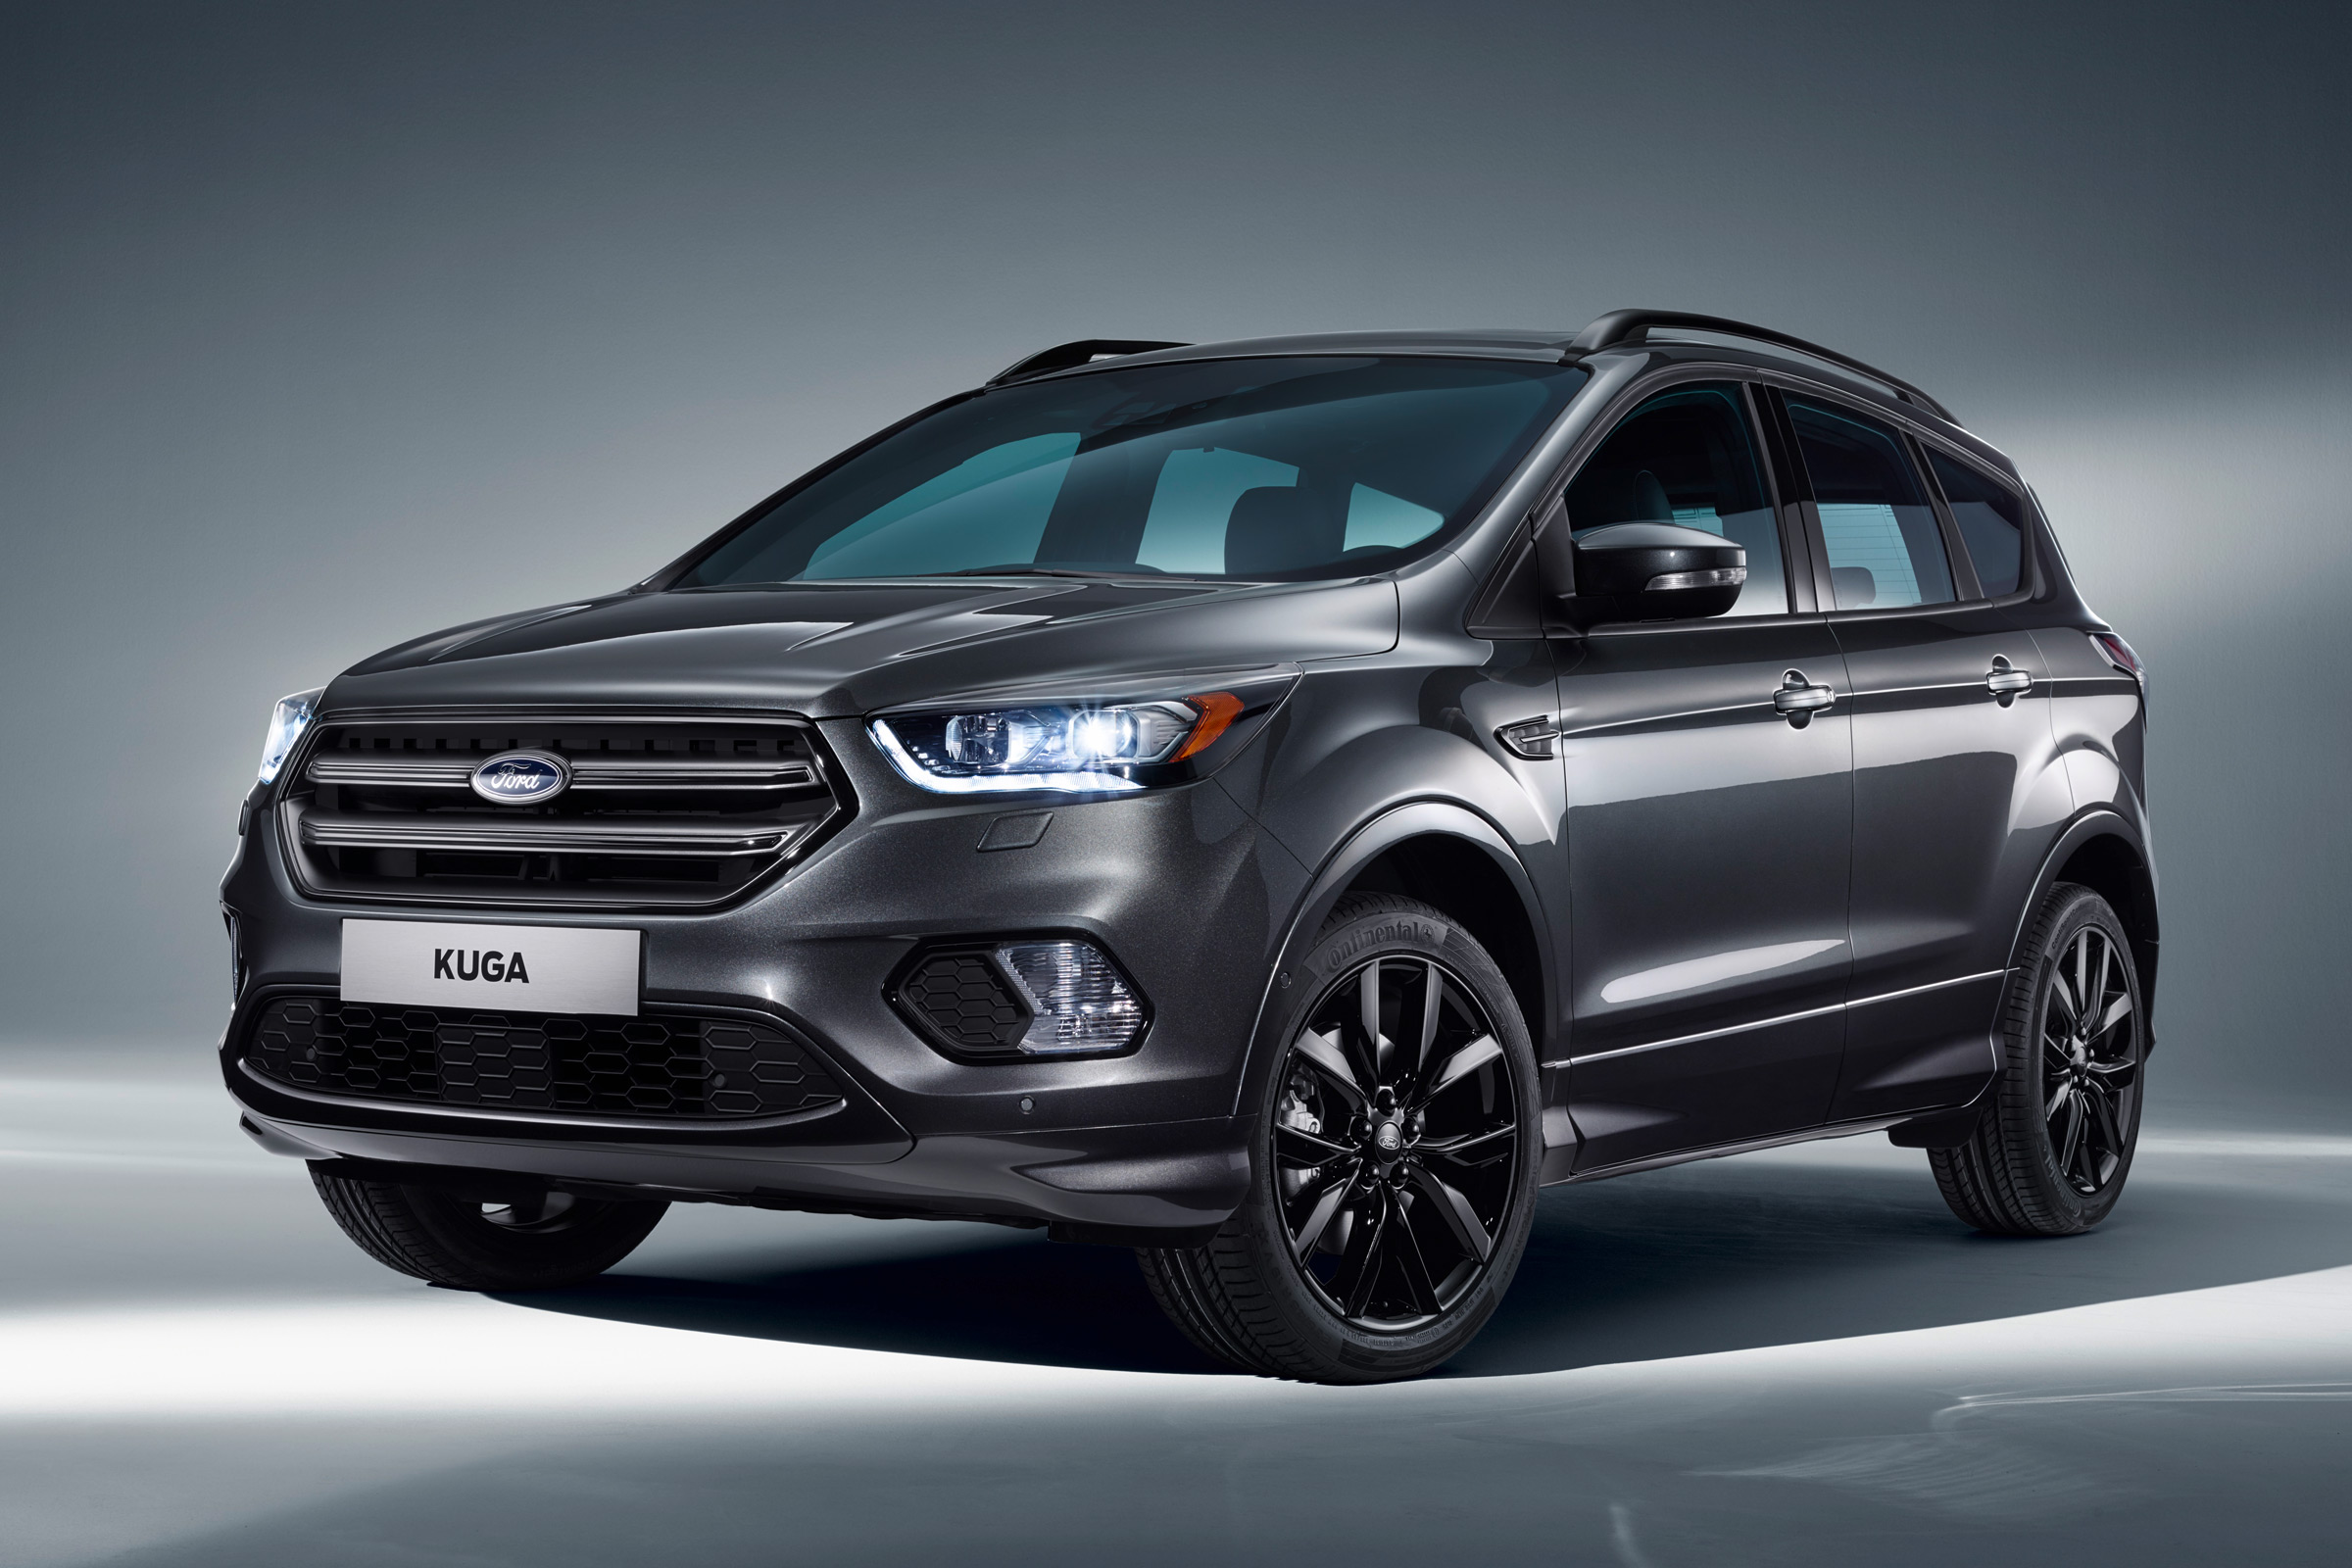 2018 Ford Kuga Rumors, Design, Interior, Engine, Specs